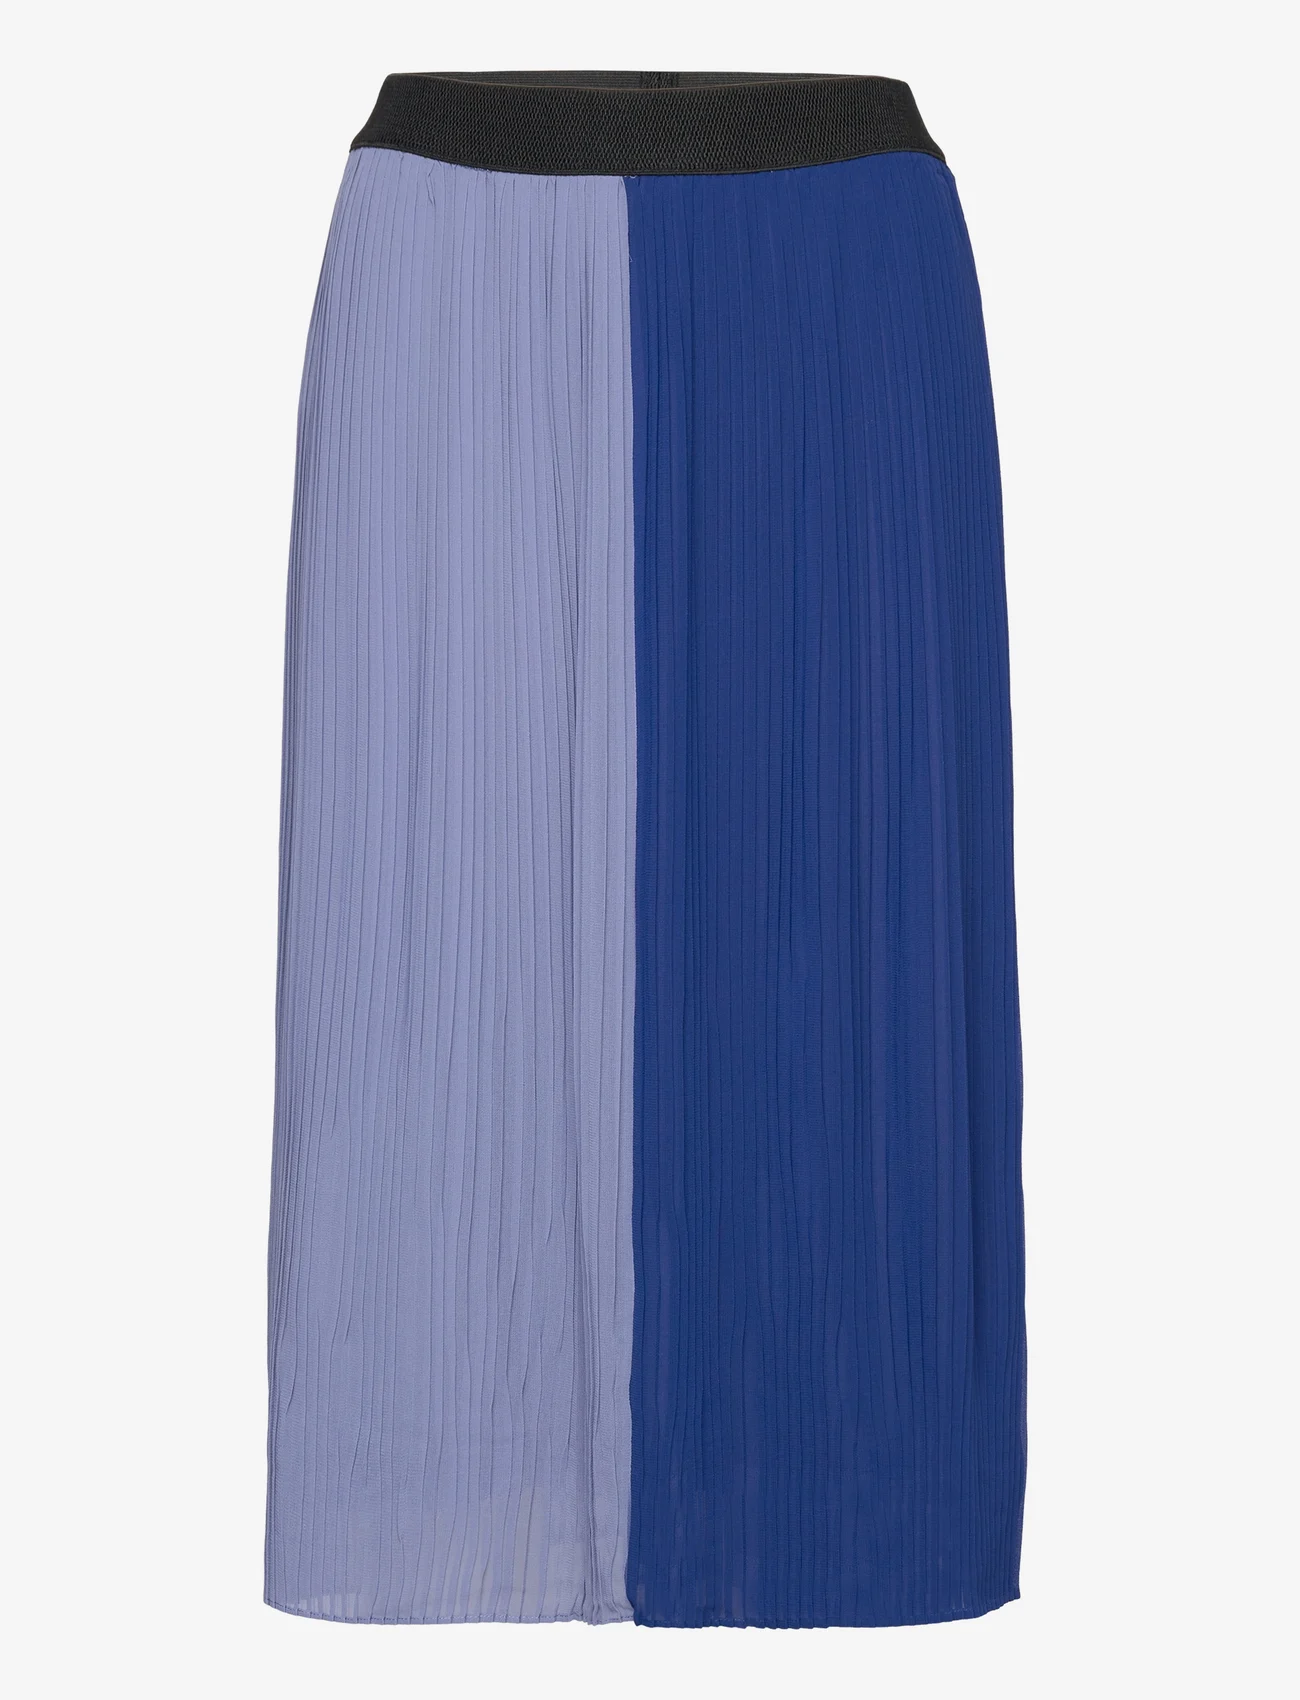 Saint Tropez - AyaSZ Skirt - plisseskjørt - colony blue - 0